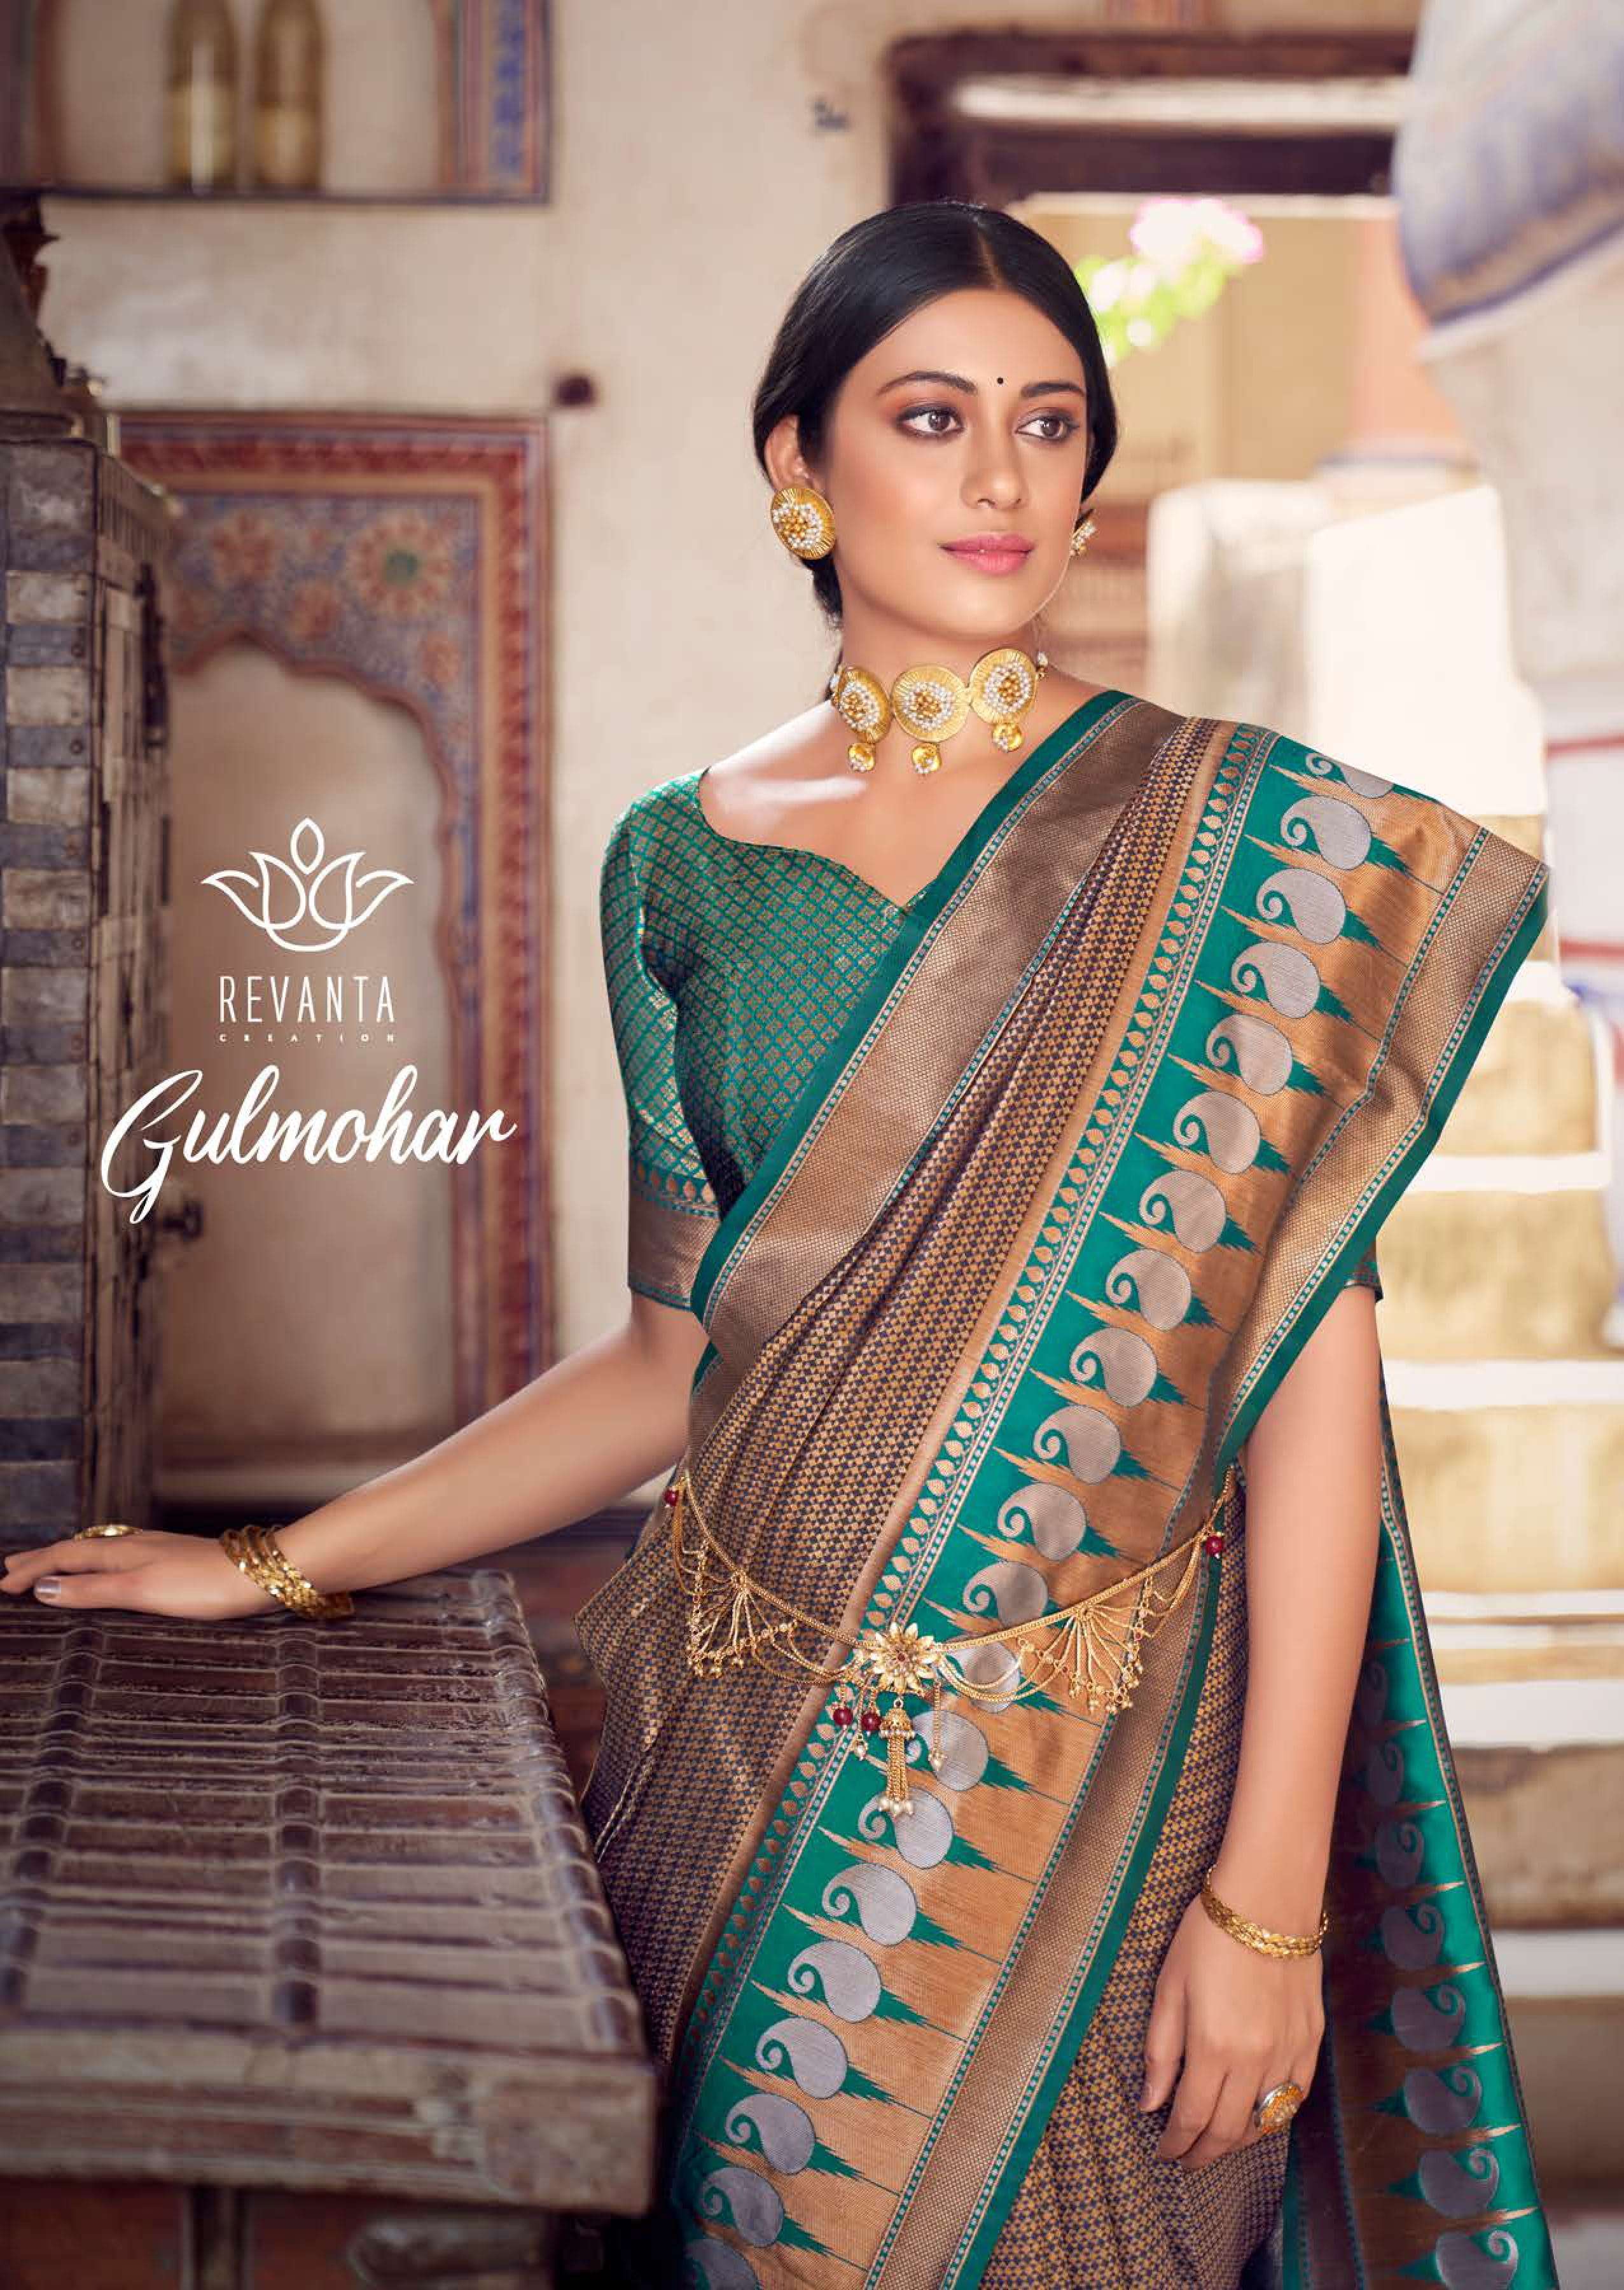 revanta gulmohar pure silk saris wholesale price  